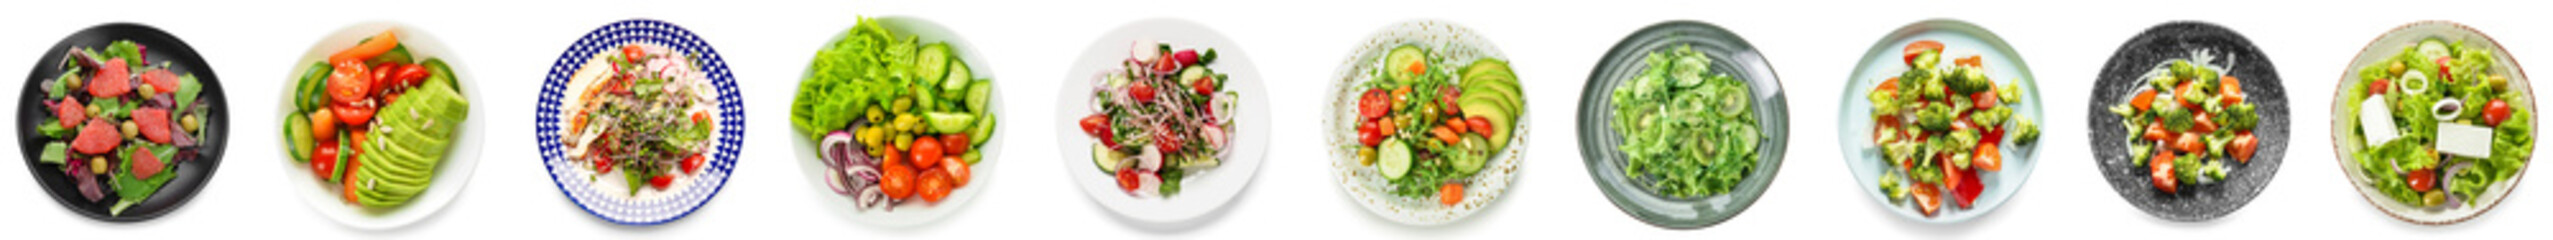 Set van smakelijke salades met groenten op witte achtergrond, bovenaanzicht